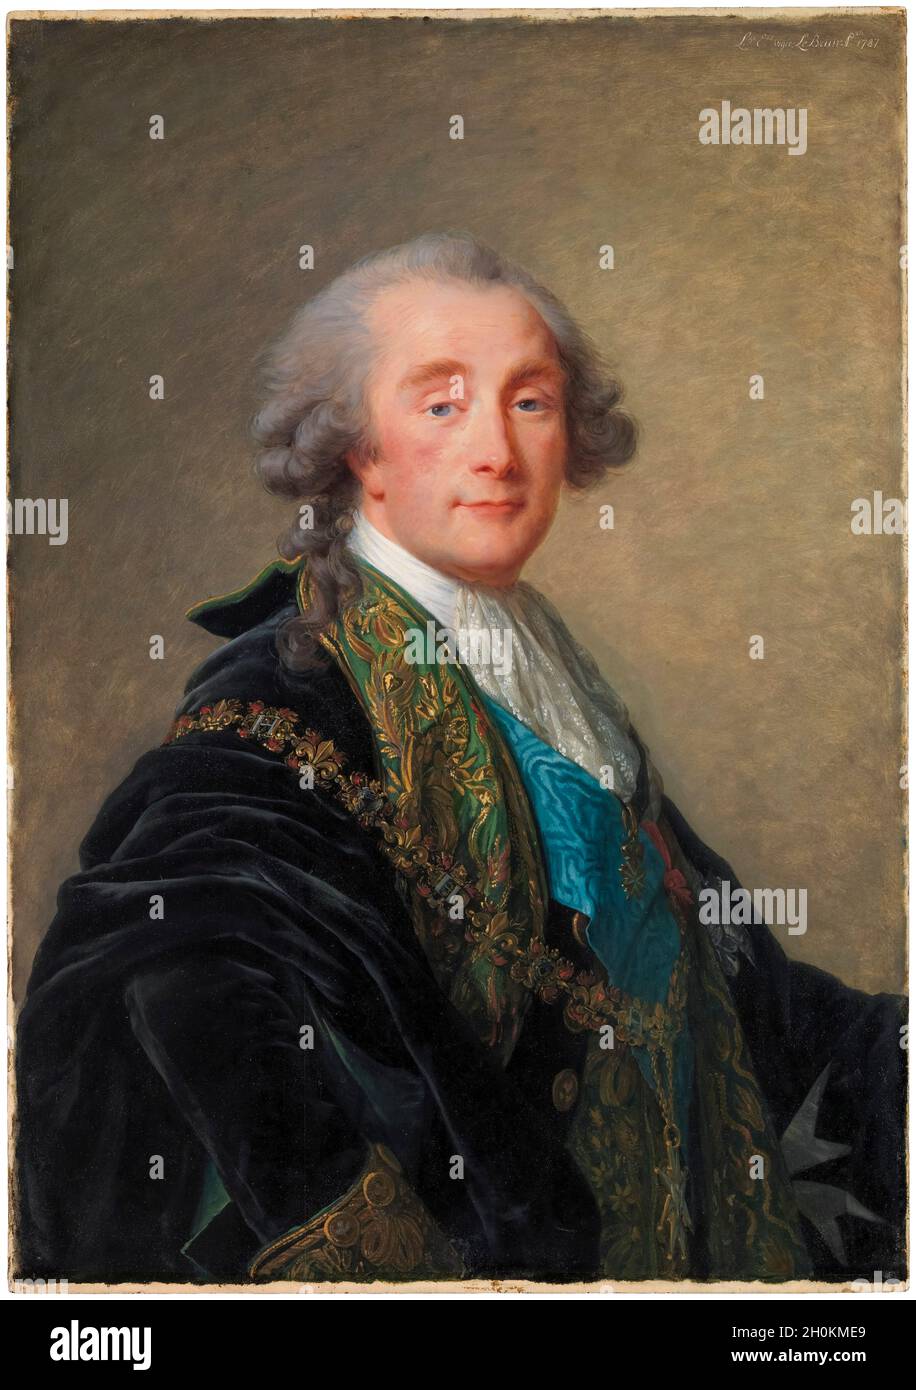 Alexandre Charles Emmanuel de Crussol-Florensac (1743–1815), portrait painting by Elisabeth Vigee Le Brun, 1787 Stock Photo